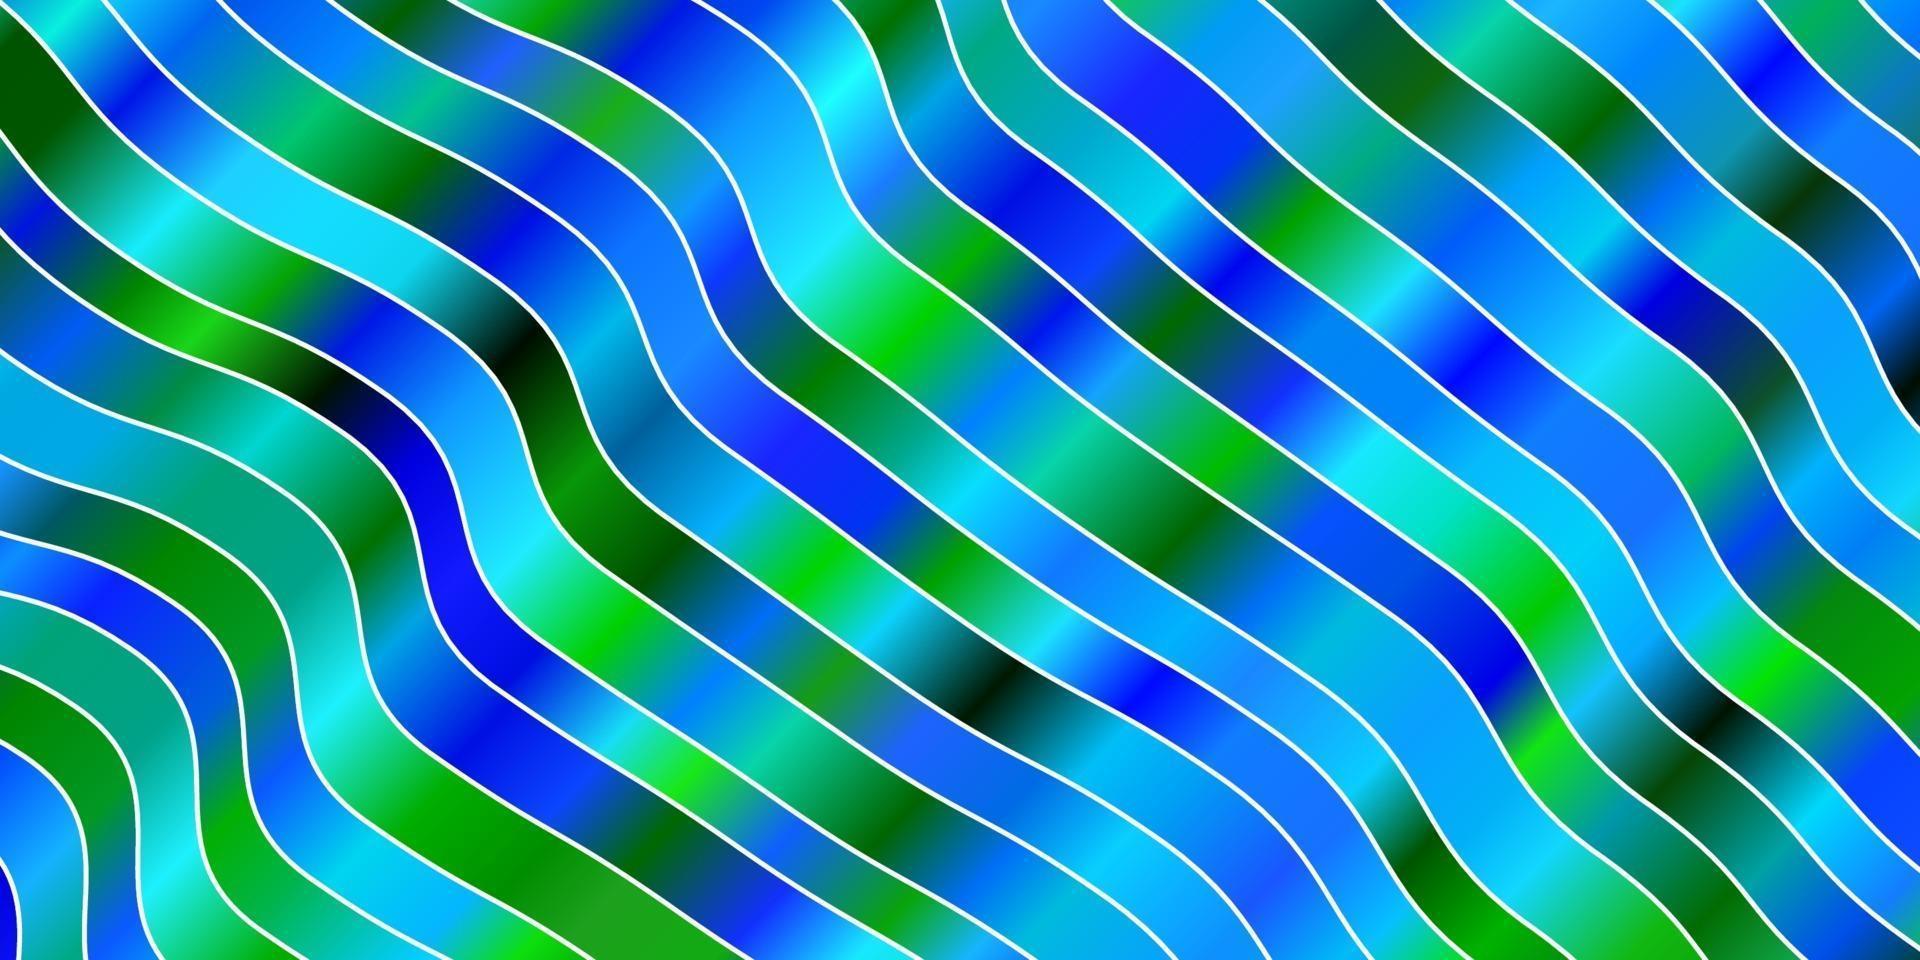 ljusblått, grönt vektormönster med sneda linjer. vektor